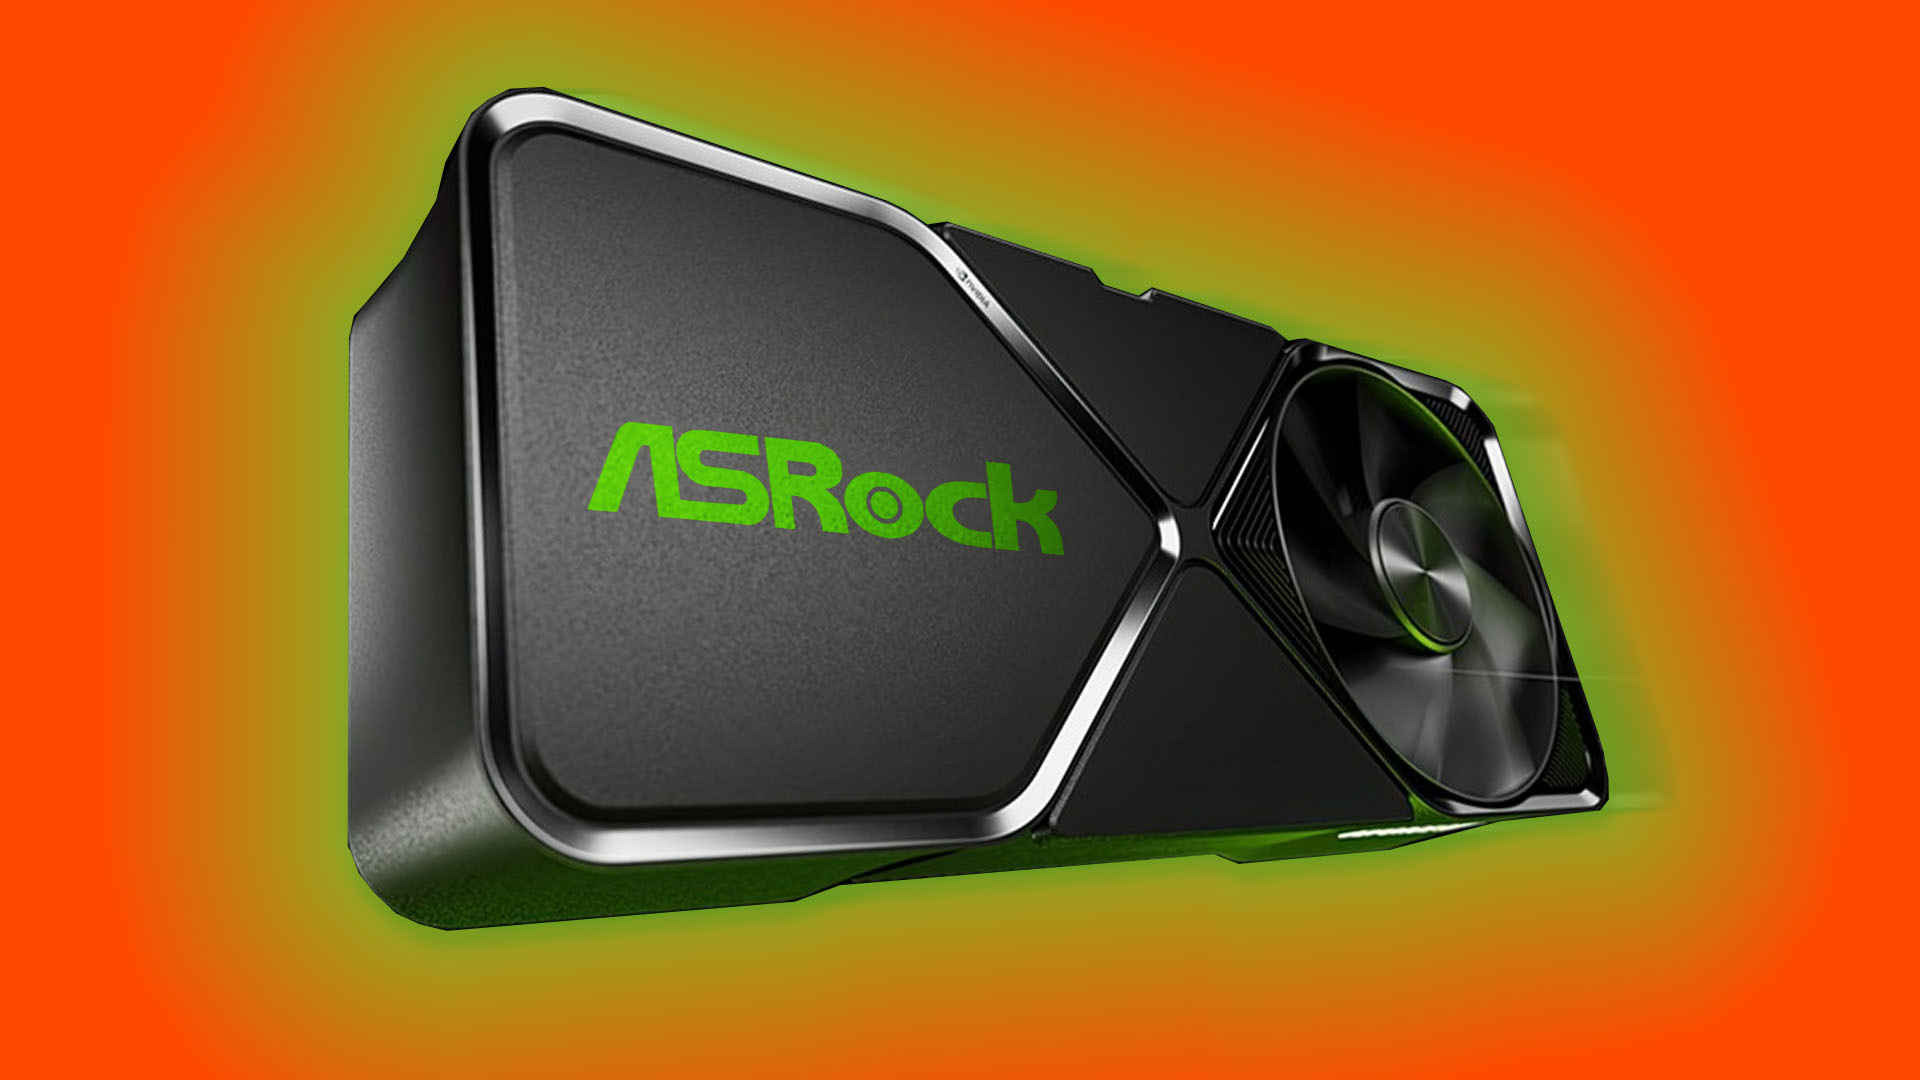 ASRock hints at possible future plans to make Nvidia GPUs